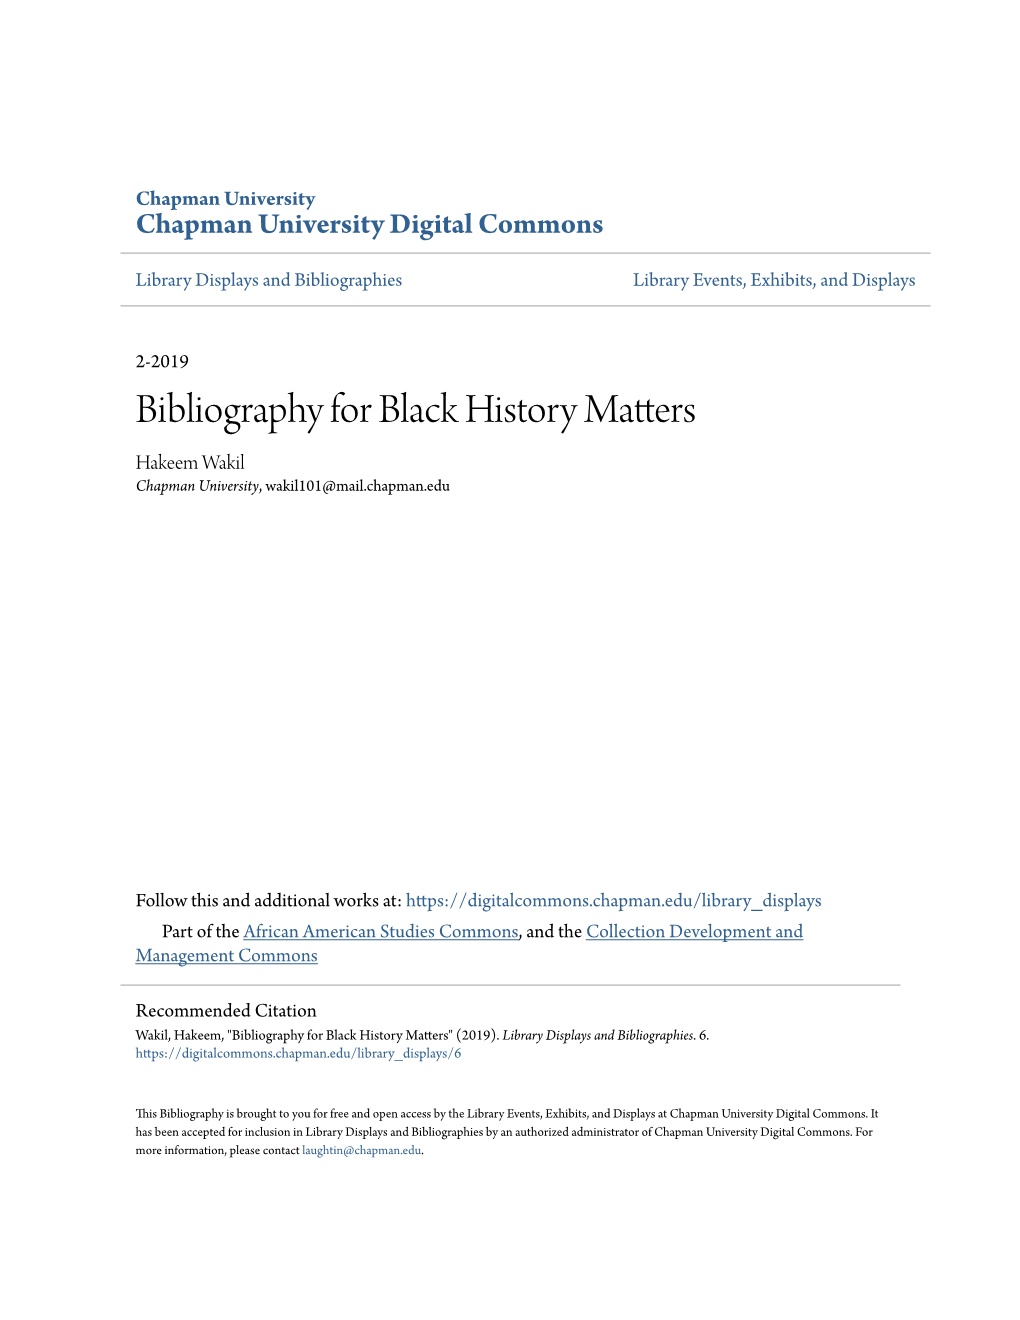 Bibliography for Black History Matters Hakeem Wakil Chapman University, Wakil101@Mail.Chapman.Edu